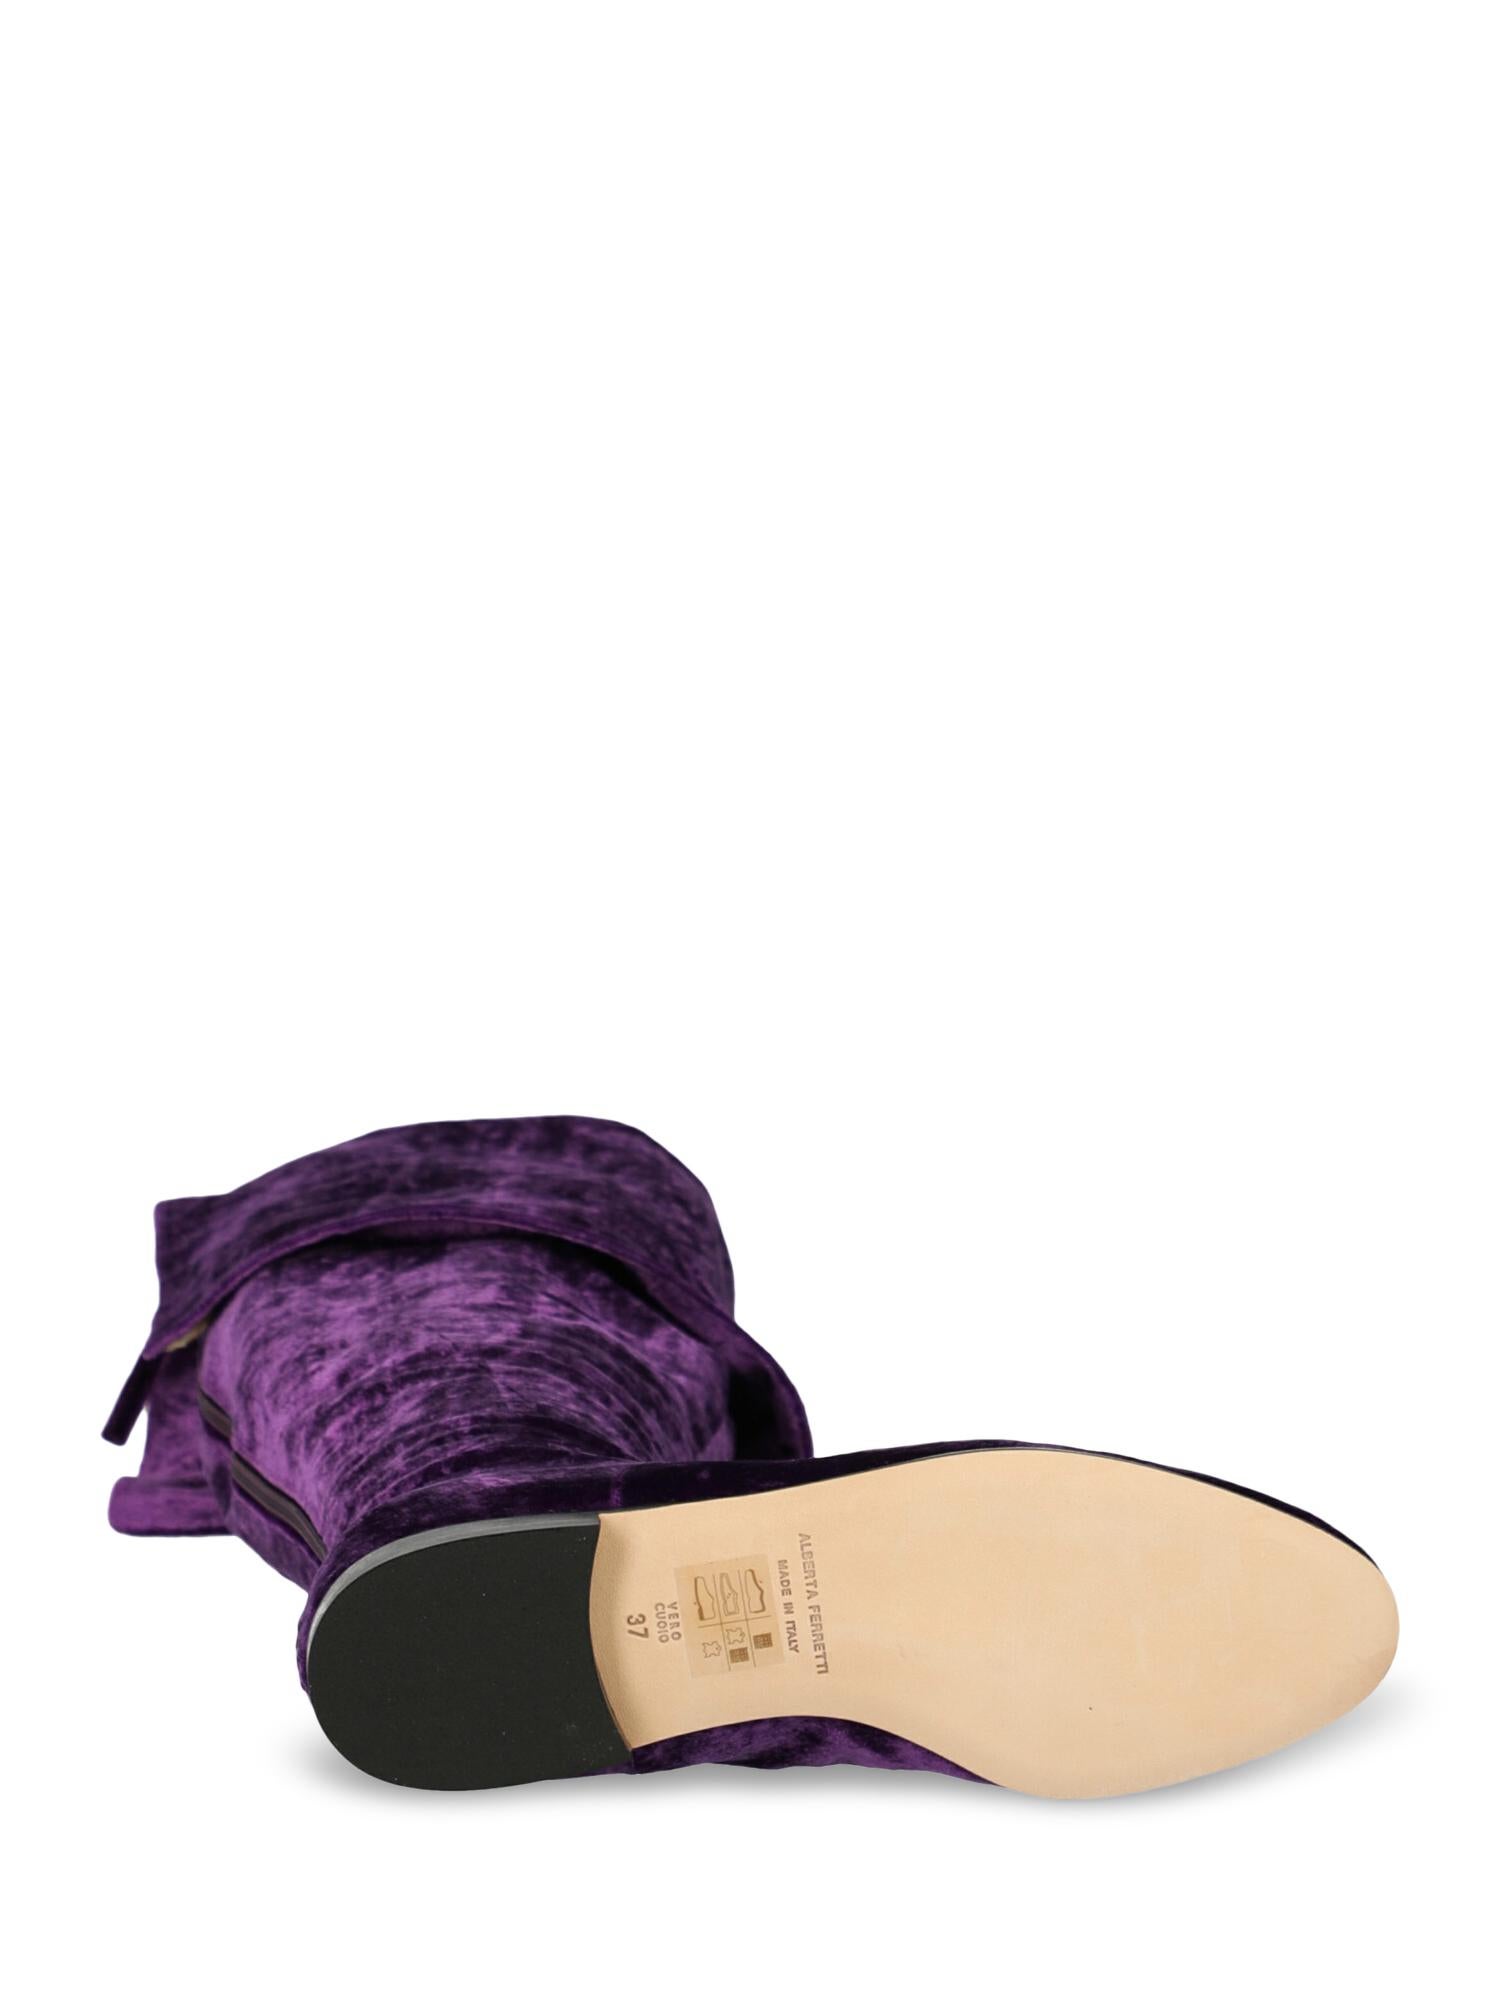 Women's Alberta Ferretti Woman Boots Purple EU 37 For Sale